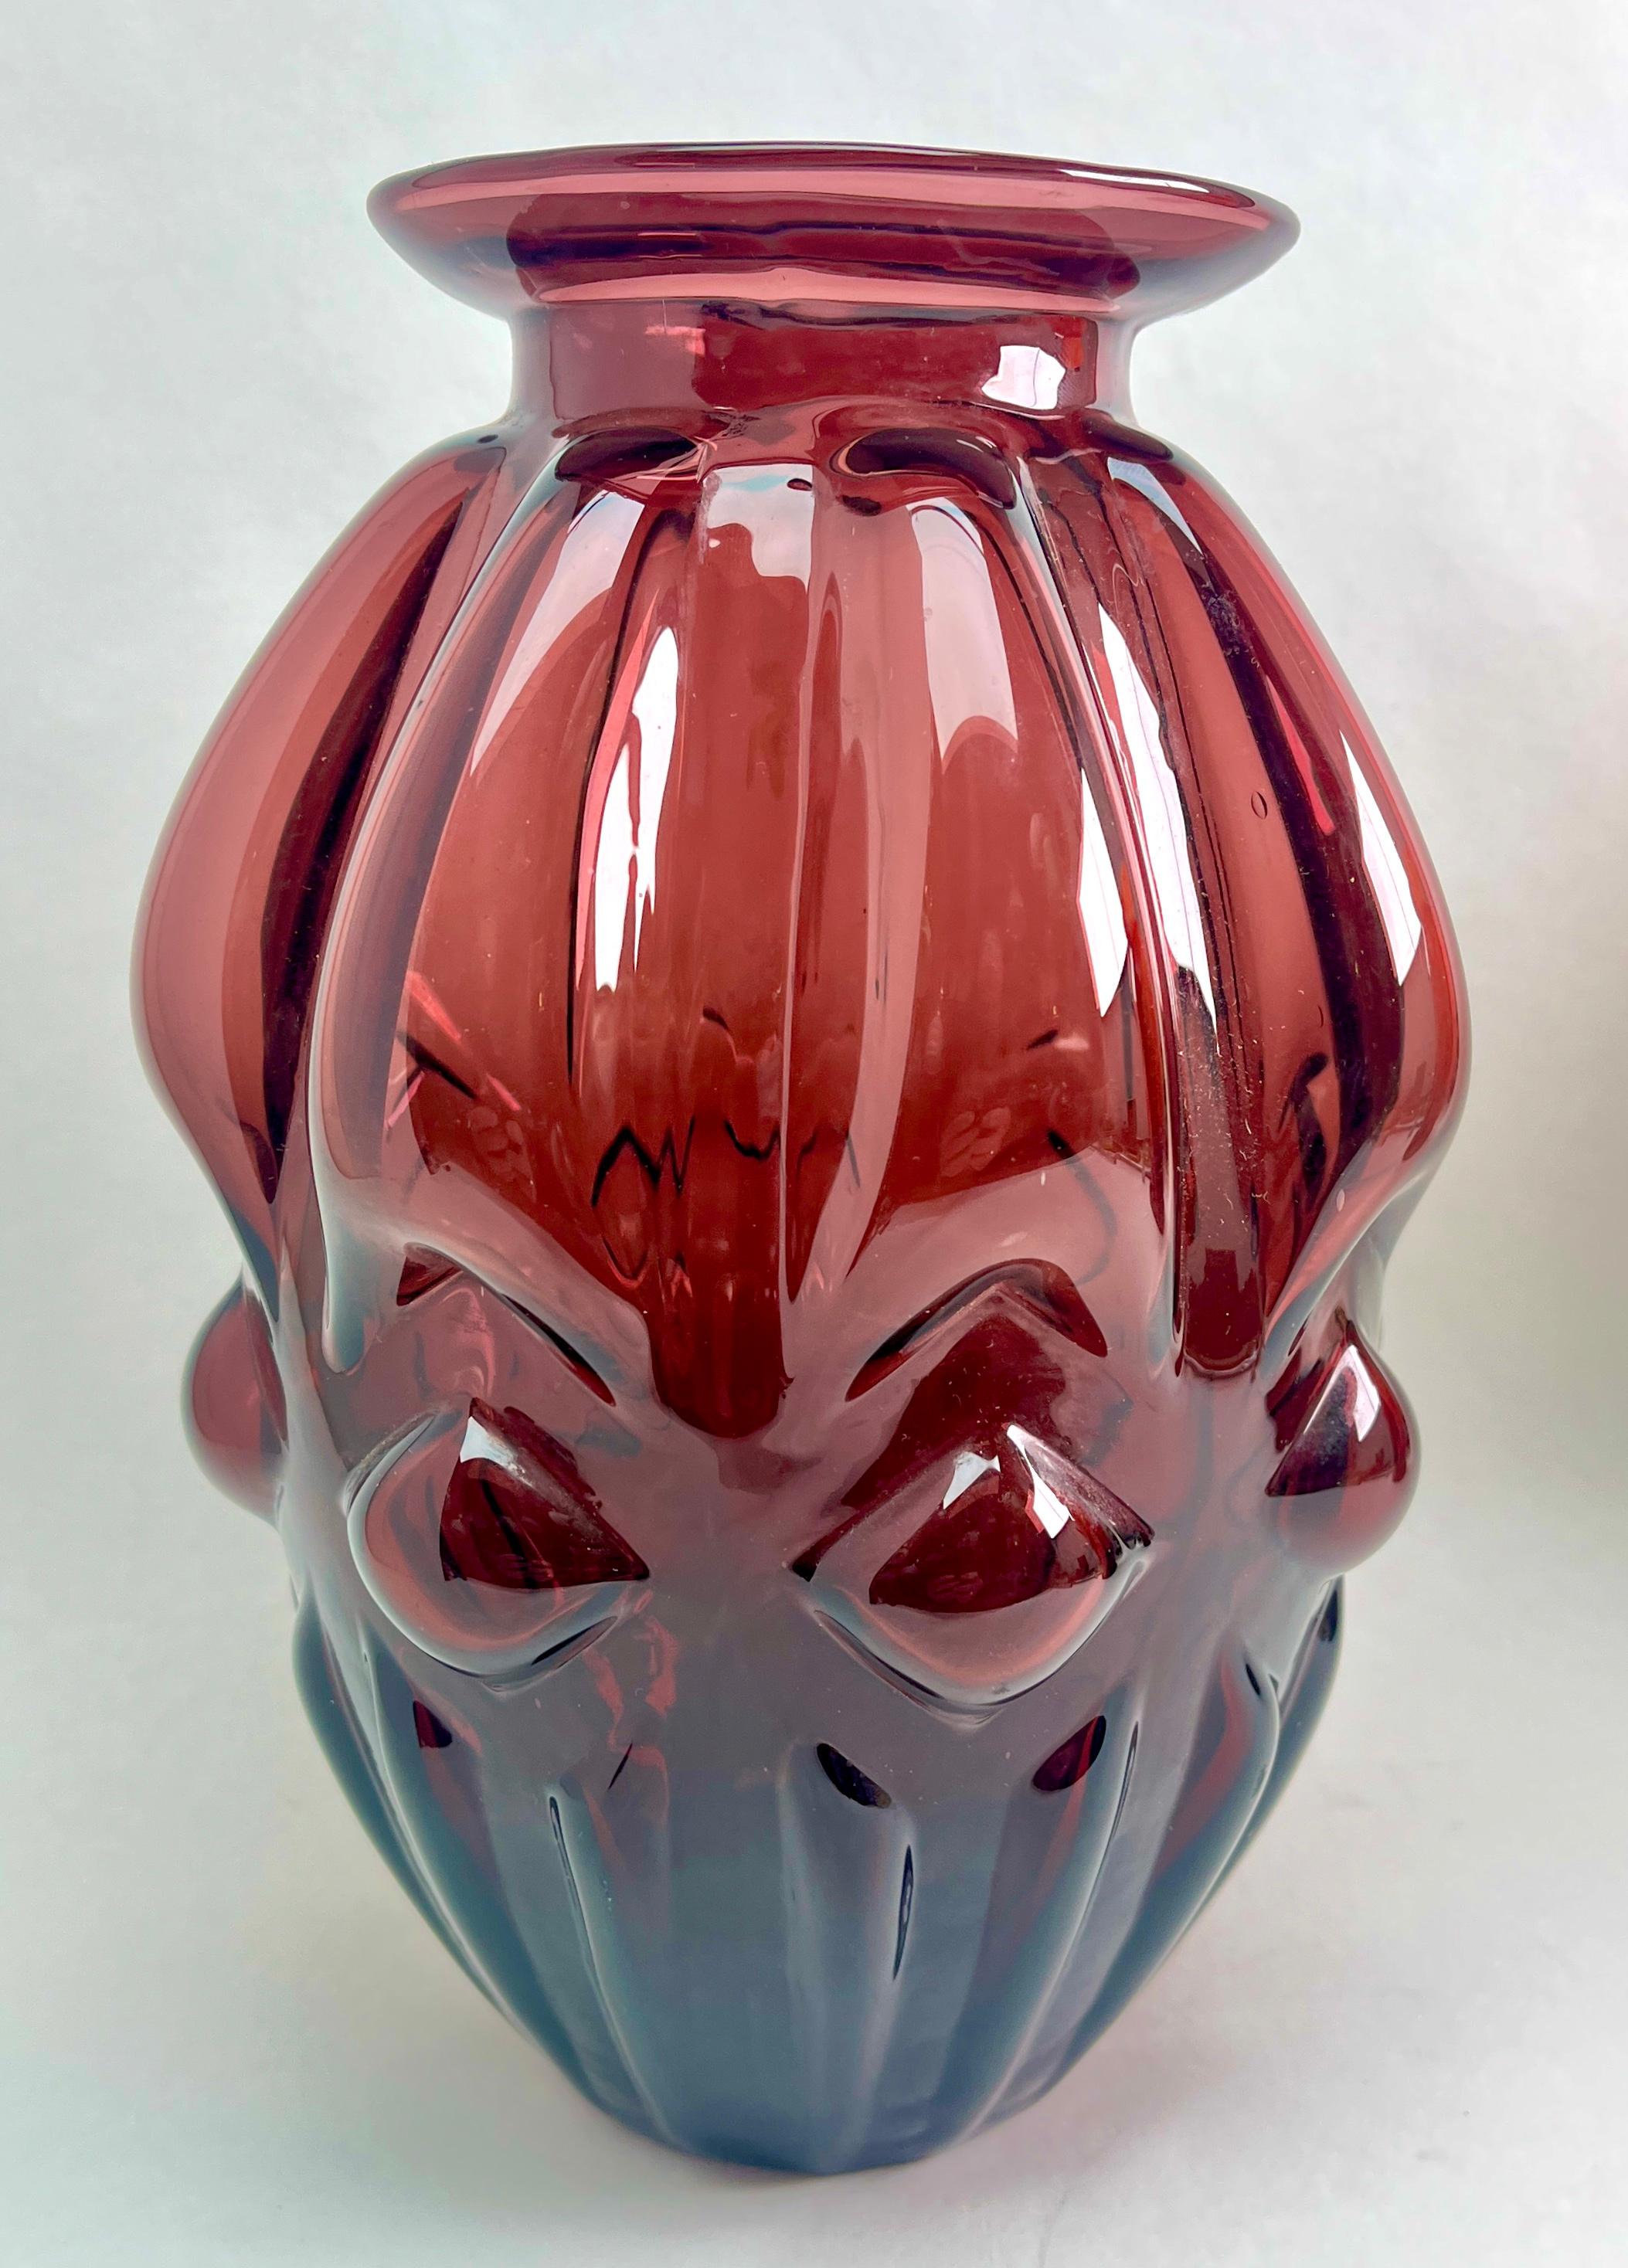 Rainbow Art Glass Company (1942-1973);

Rainbow Art Glass Co mundgeblasen Deep Purple, Amethyst Einsatz gerippt Runde Vase.  Hergestellt in West Virginia, USA

Die Fotografie kann die einfache, elegante Beleuchtung dieser Vase nicht